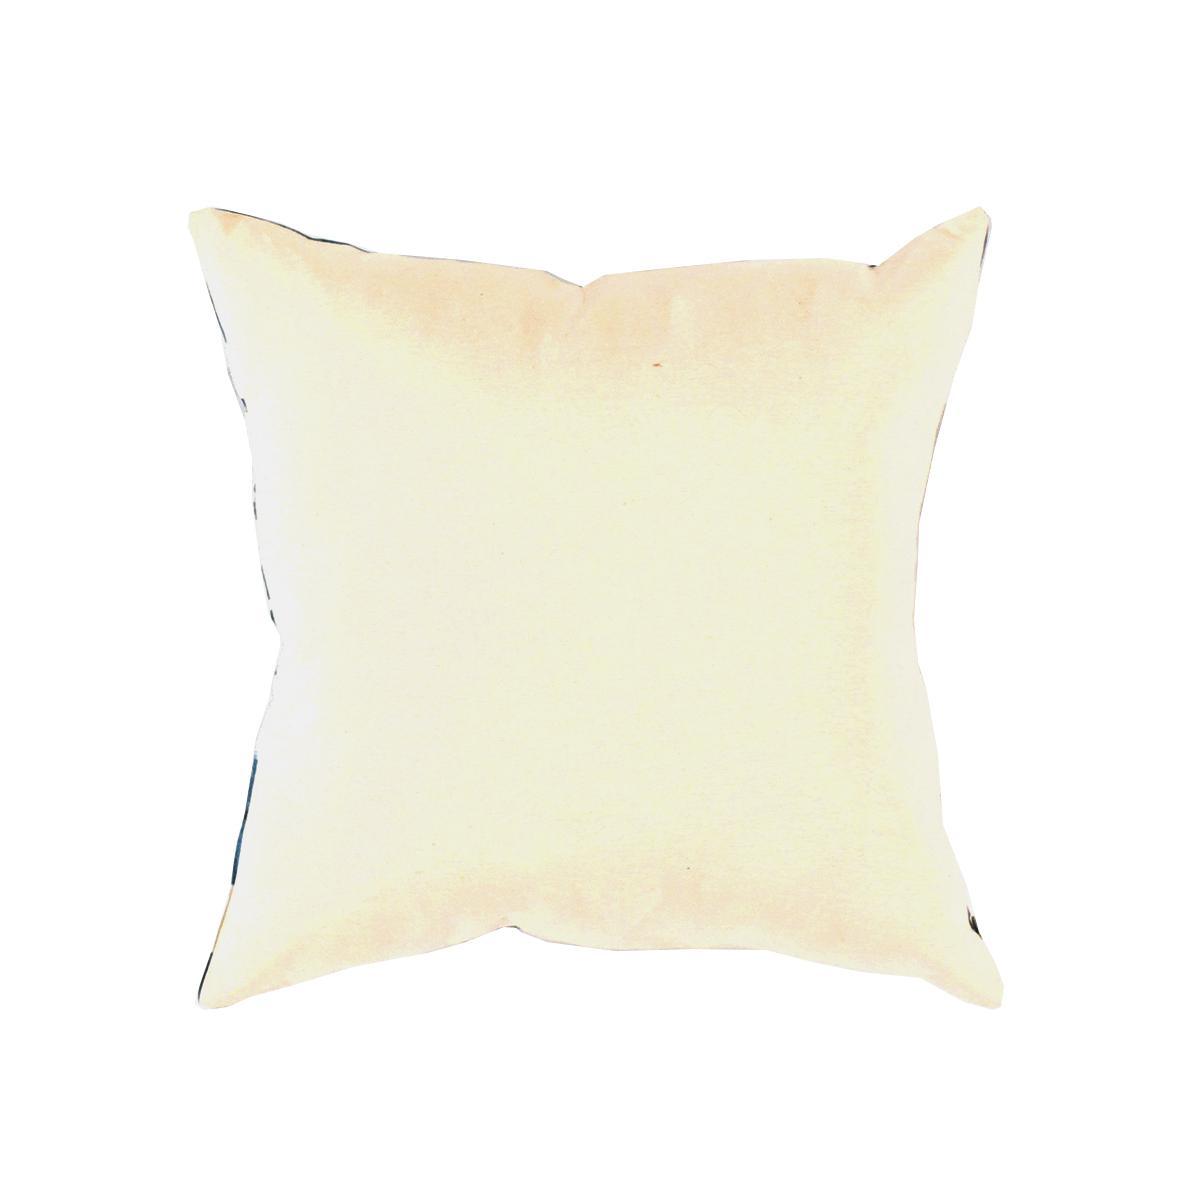 Canvello Handmade Turkish Blue Silk IKAT Pillow - 16" X 16"